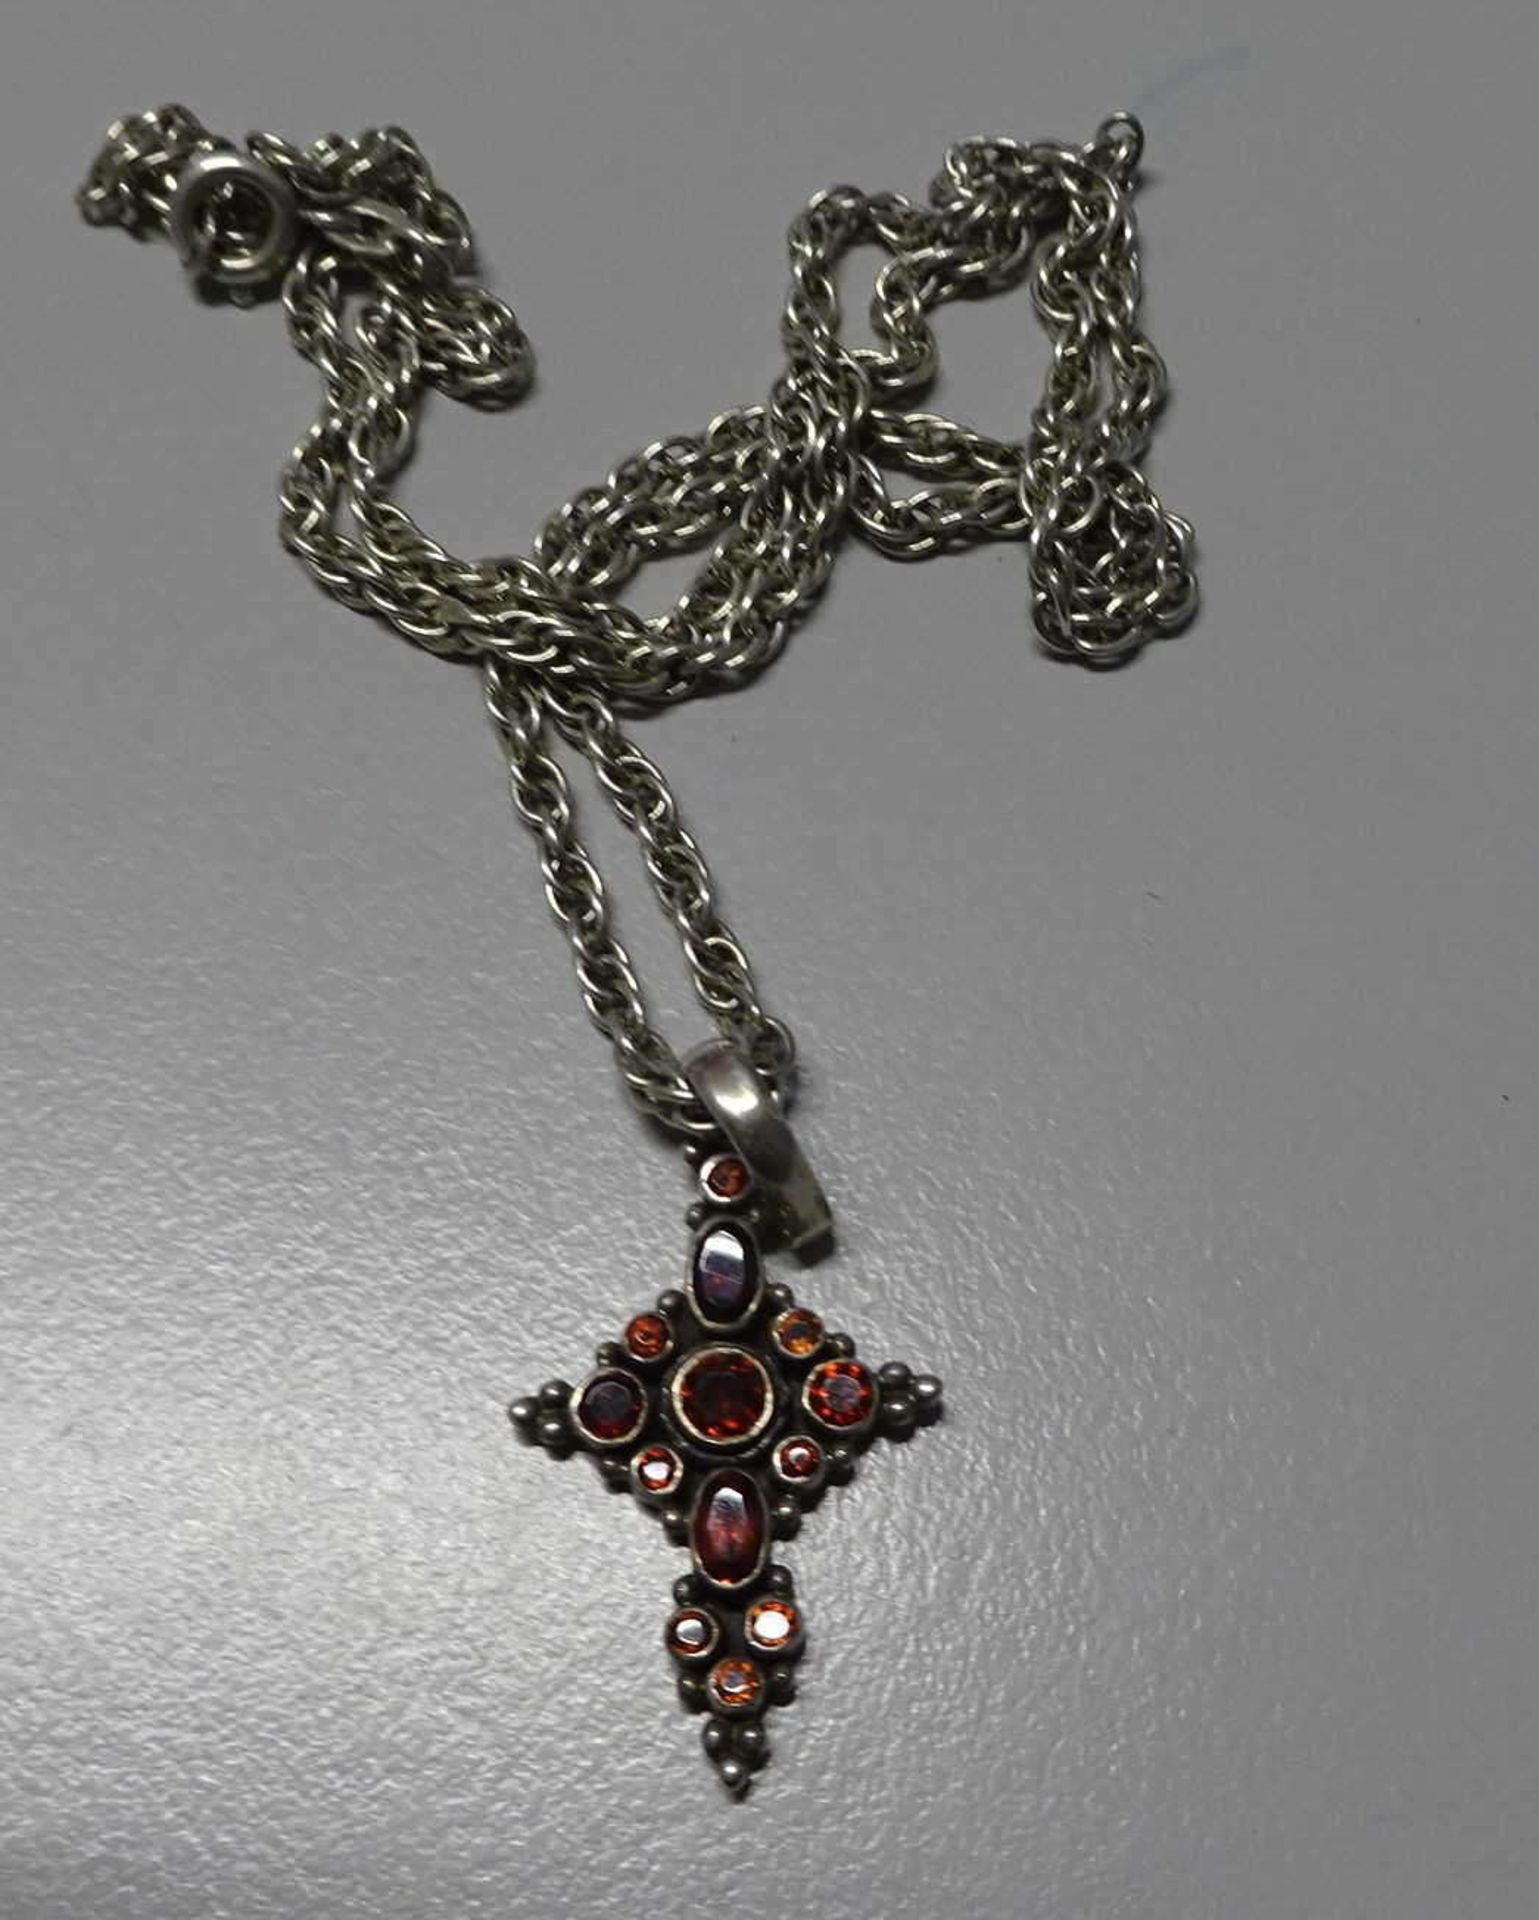 Silberkette mit Kreuz, Silber mit Granaten besetzt. Länge ca. 54cm. Gesamtgewicht ca, 14,2g